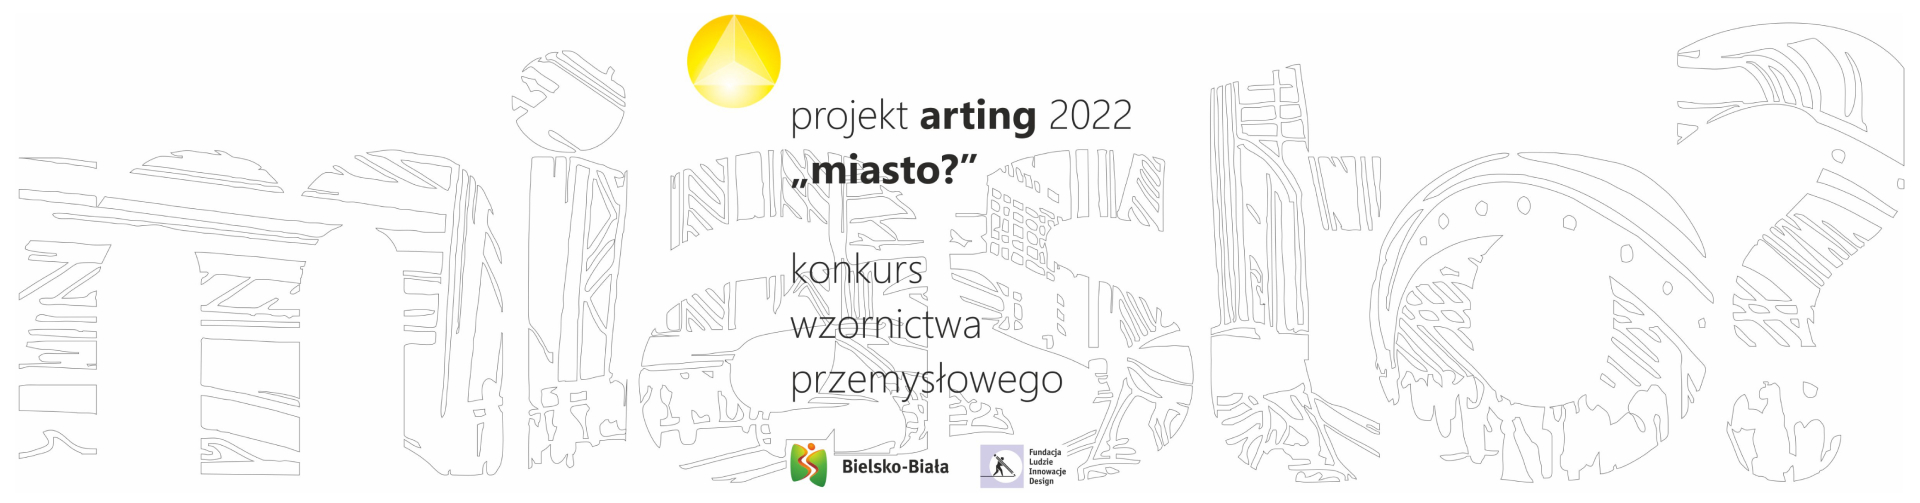 projekt arting 2022